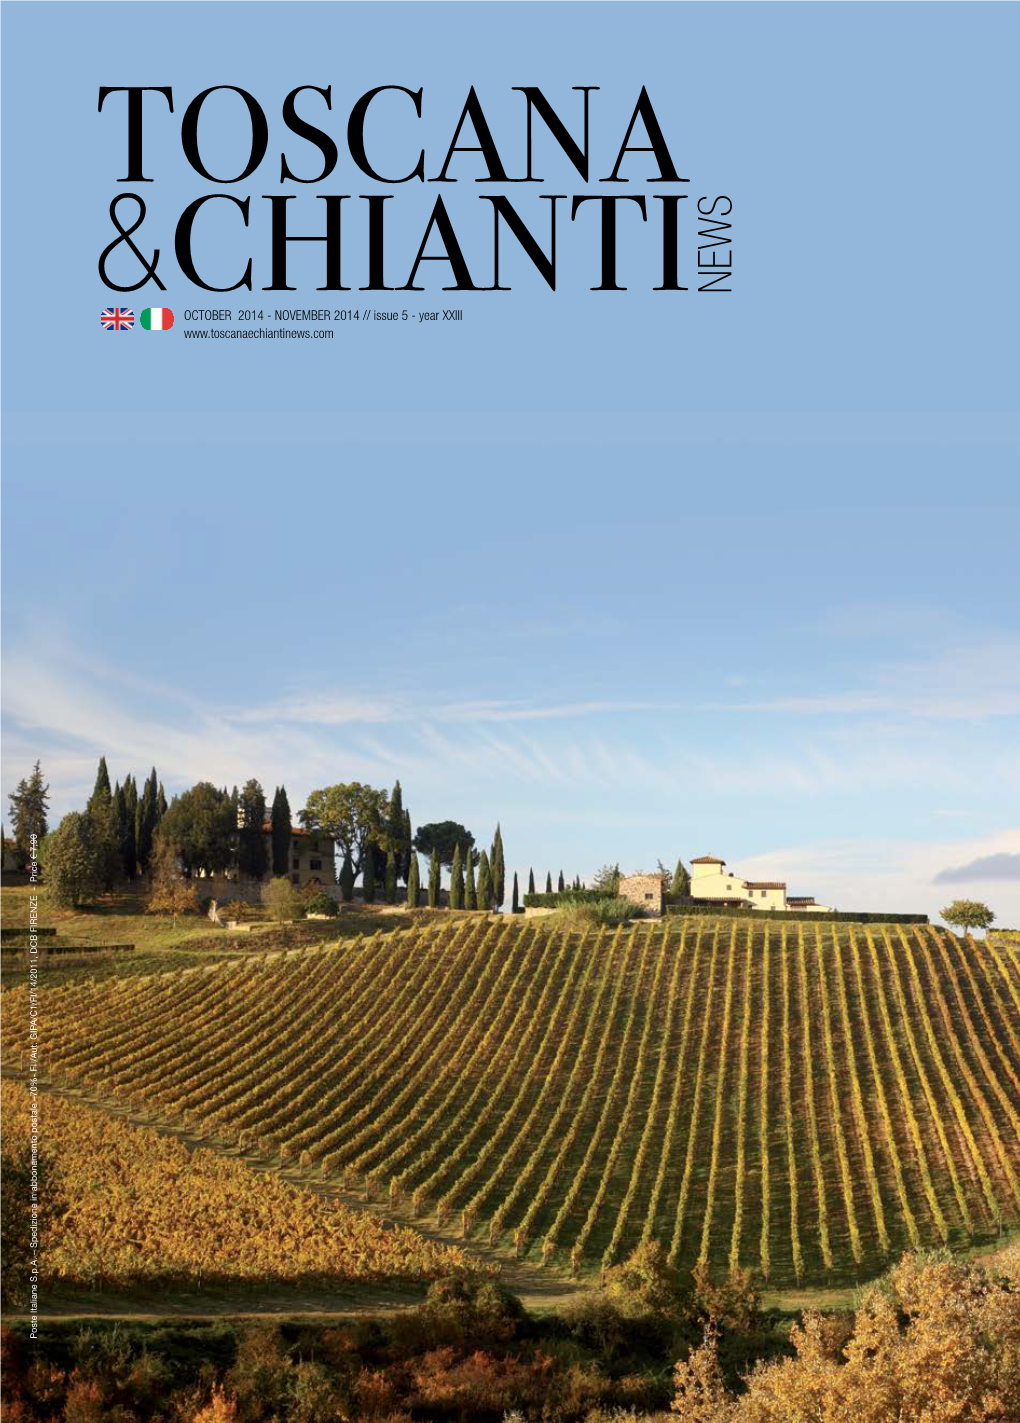 Toscana &Chianti News